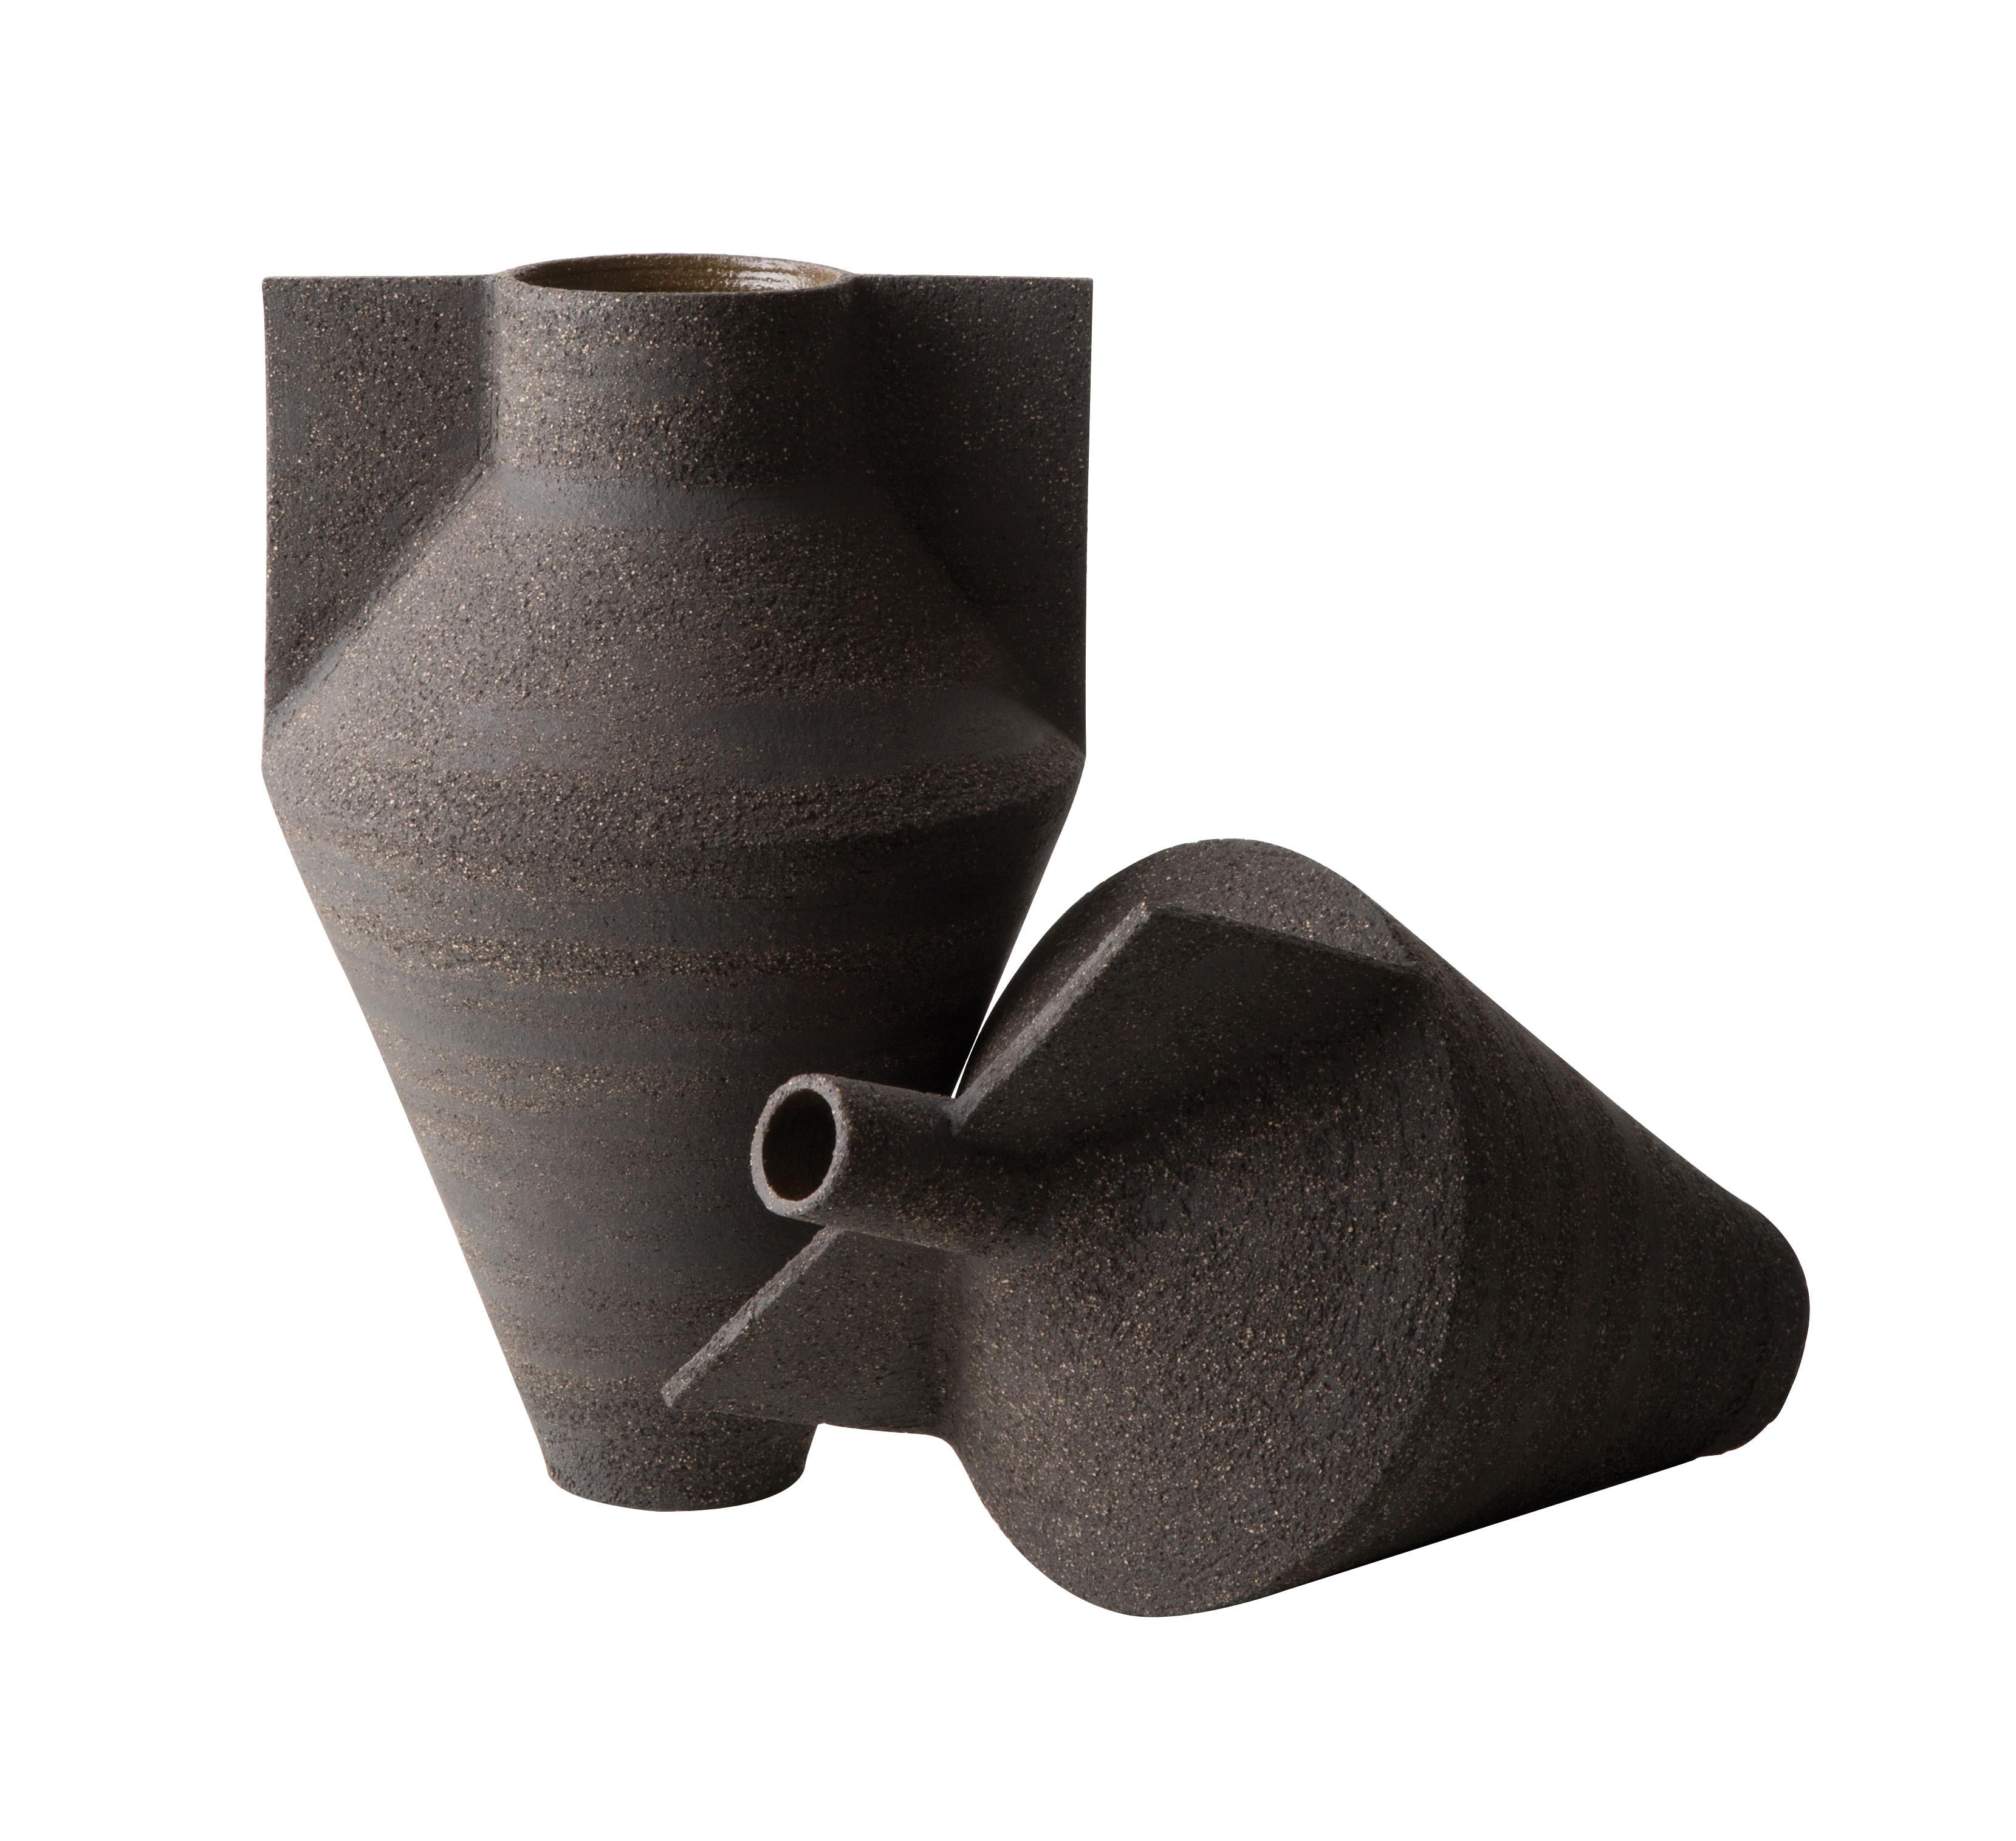 Die Jana-Vasen sind eine Kollektion, die von Antonio Forteleoni für Cappellini entworfen wurde. Sie zeichnen sich durch klare Linien und Handarbeit aus. Diese Vasen werden aus schwarzer Erde hergestellt, von Hand auf einer Töpferscheibe geschmiedet